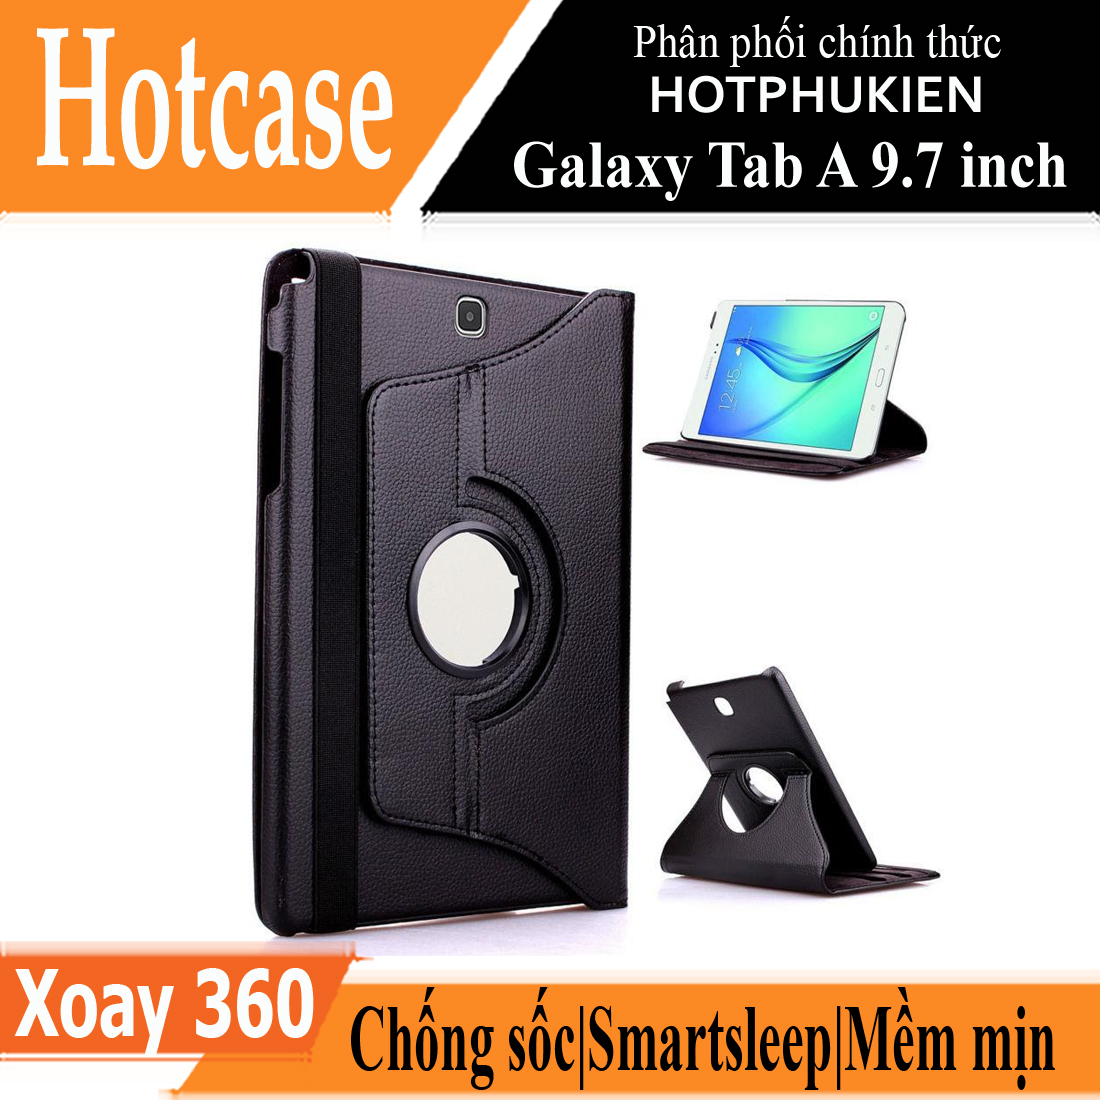 Case bao da Samsung Galaxy Tab A 9.7 inch (SM-T550) xoay 360 độ hiệu HOTCASE